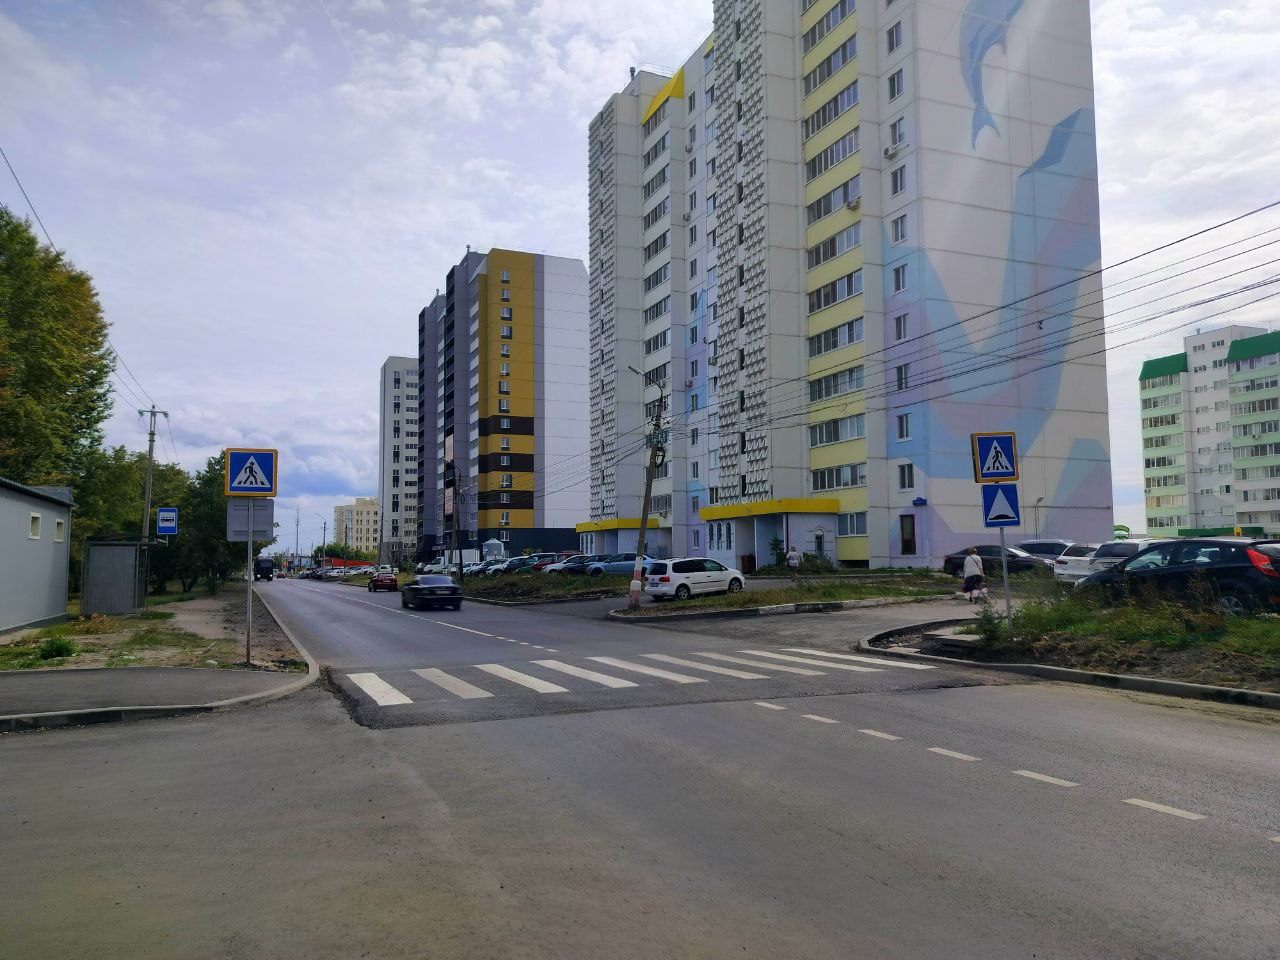 На восьми улицах Ульяновска обновлено асфальтовое покрытие.